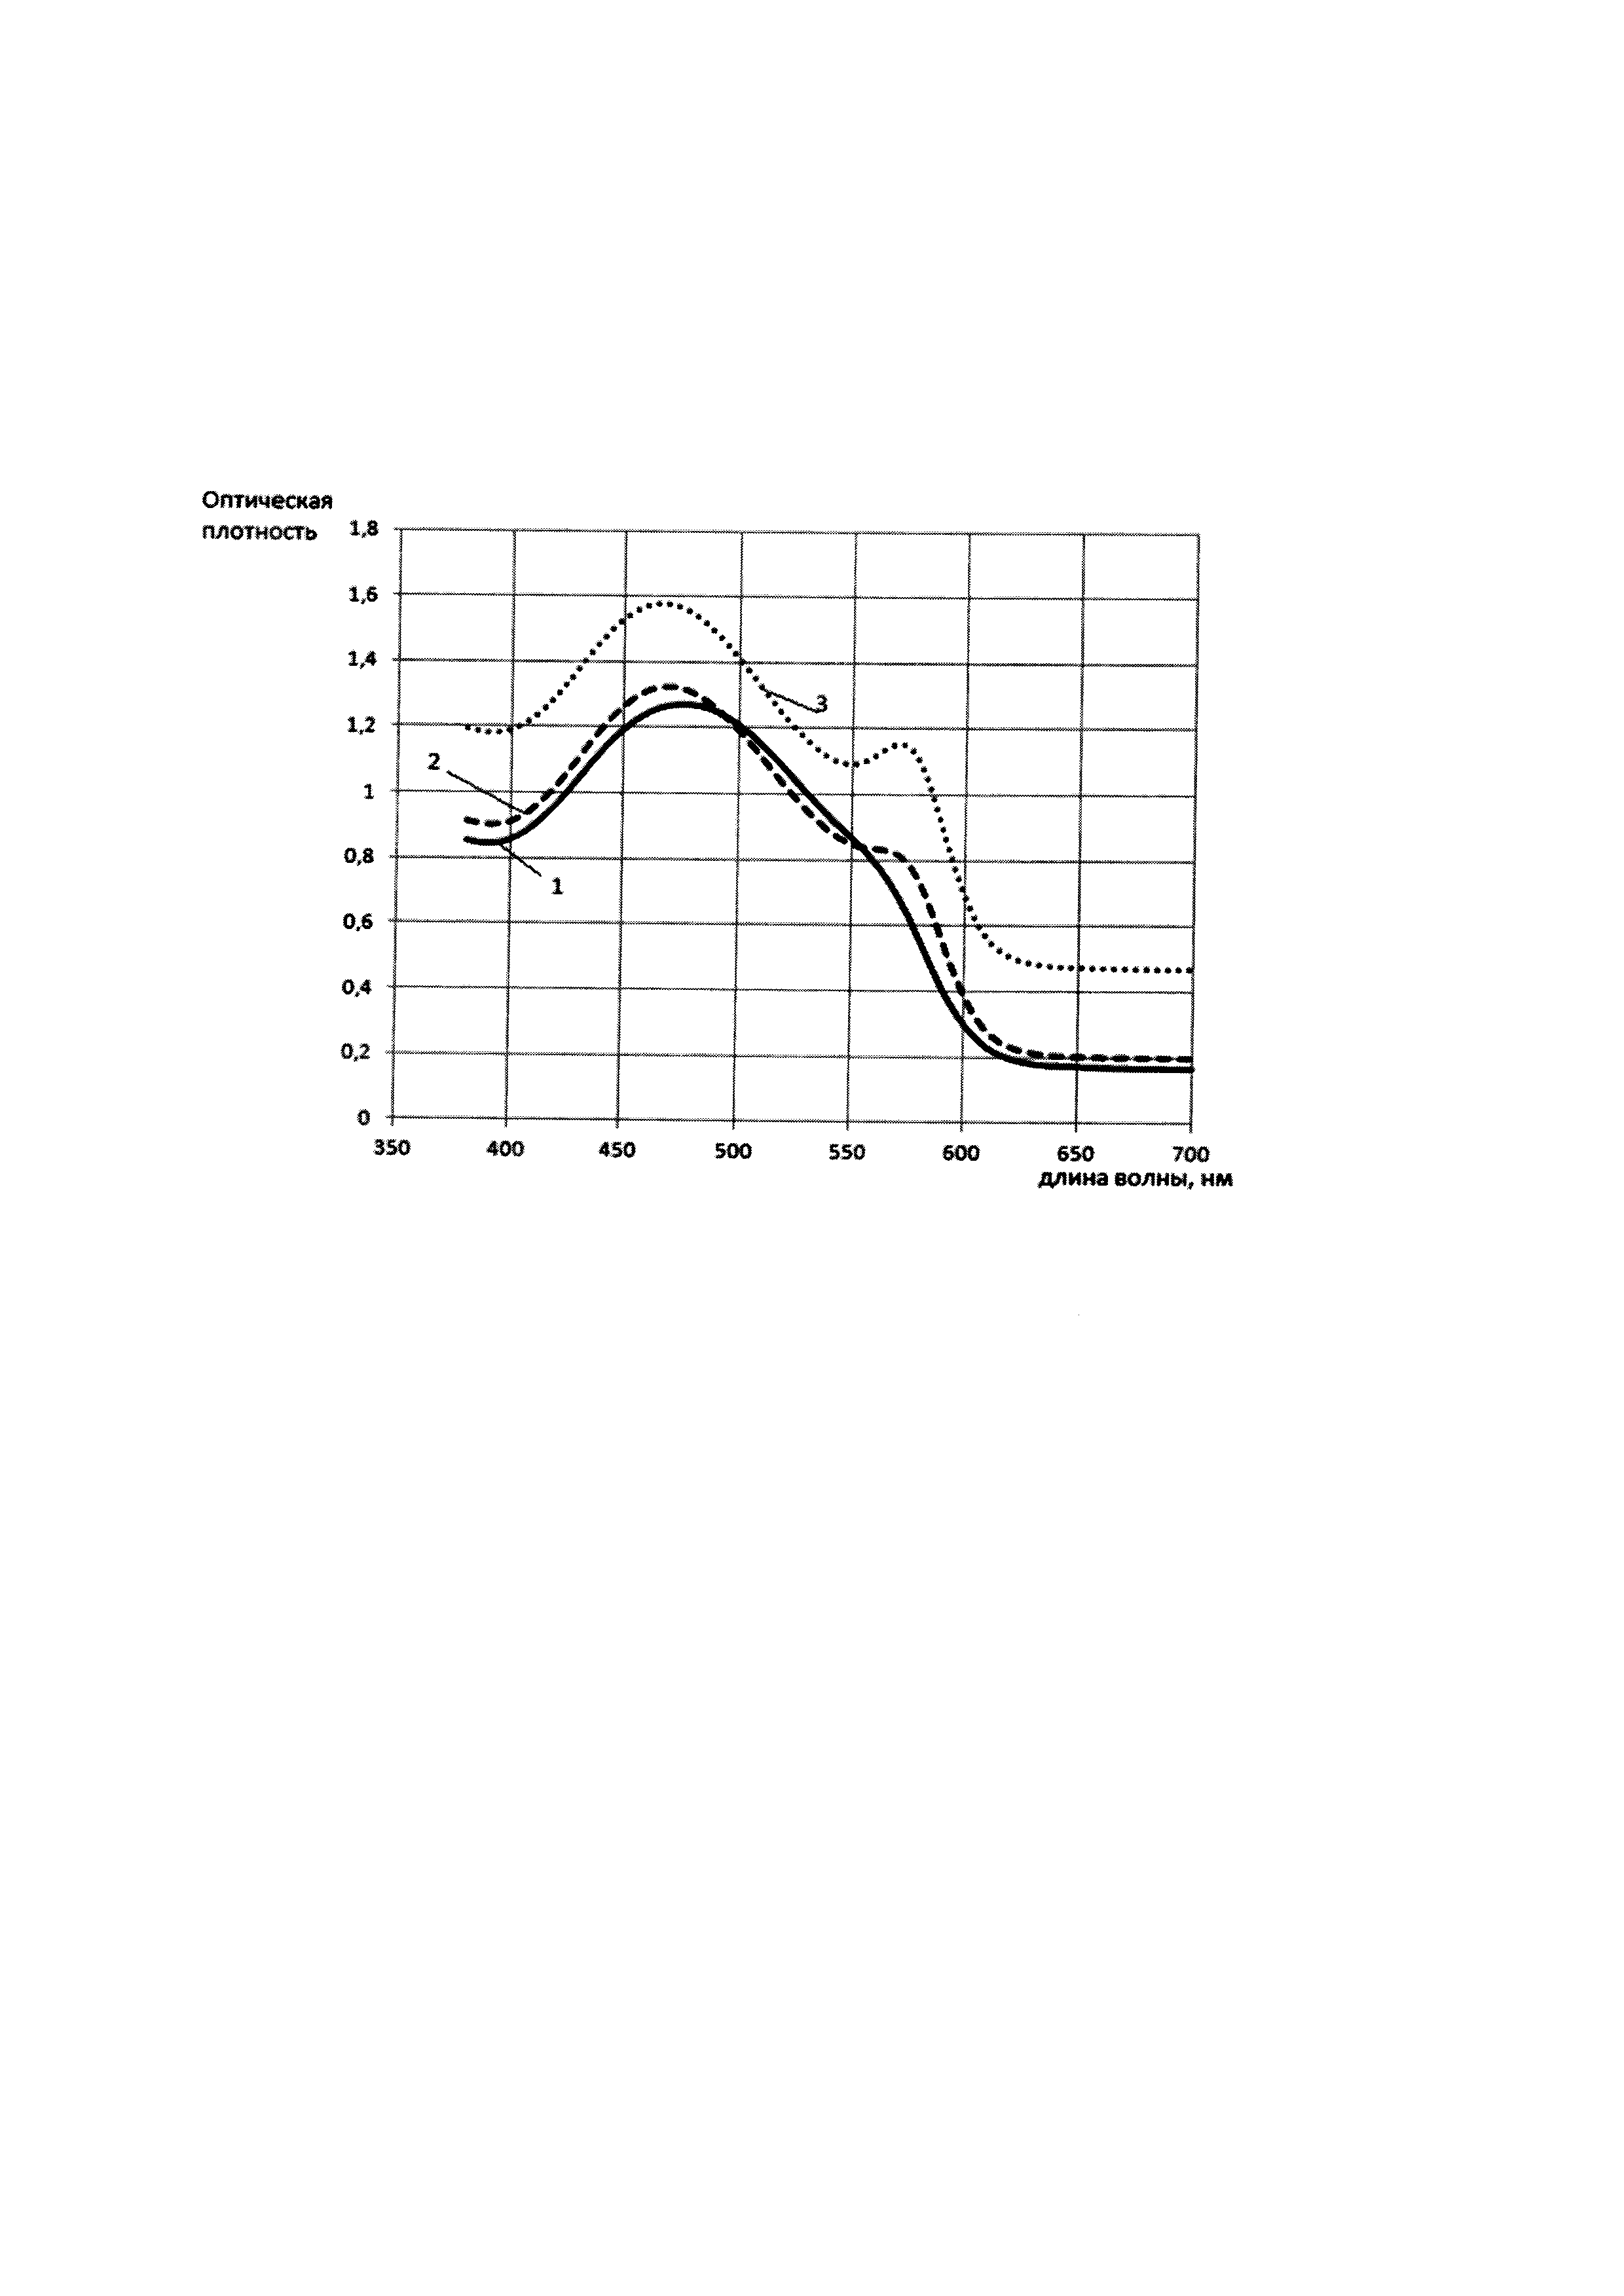 Способ определения концентрации свинца (II) в водных образцах